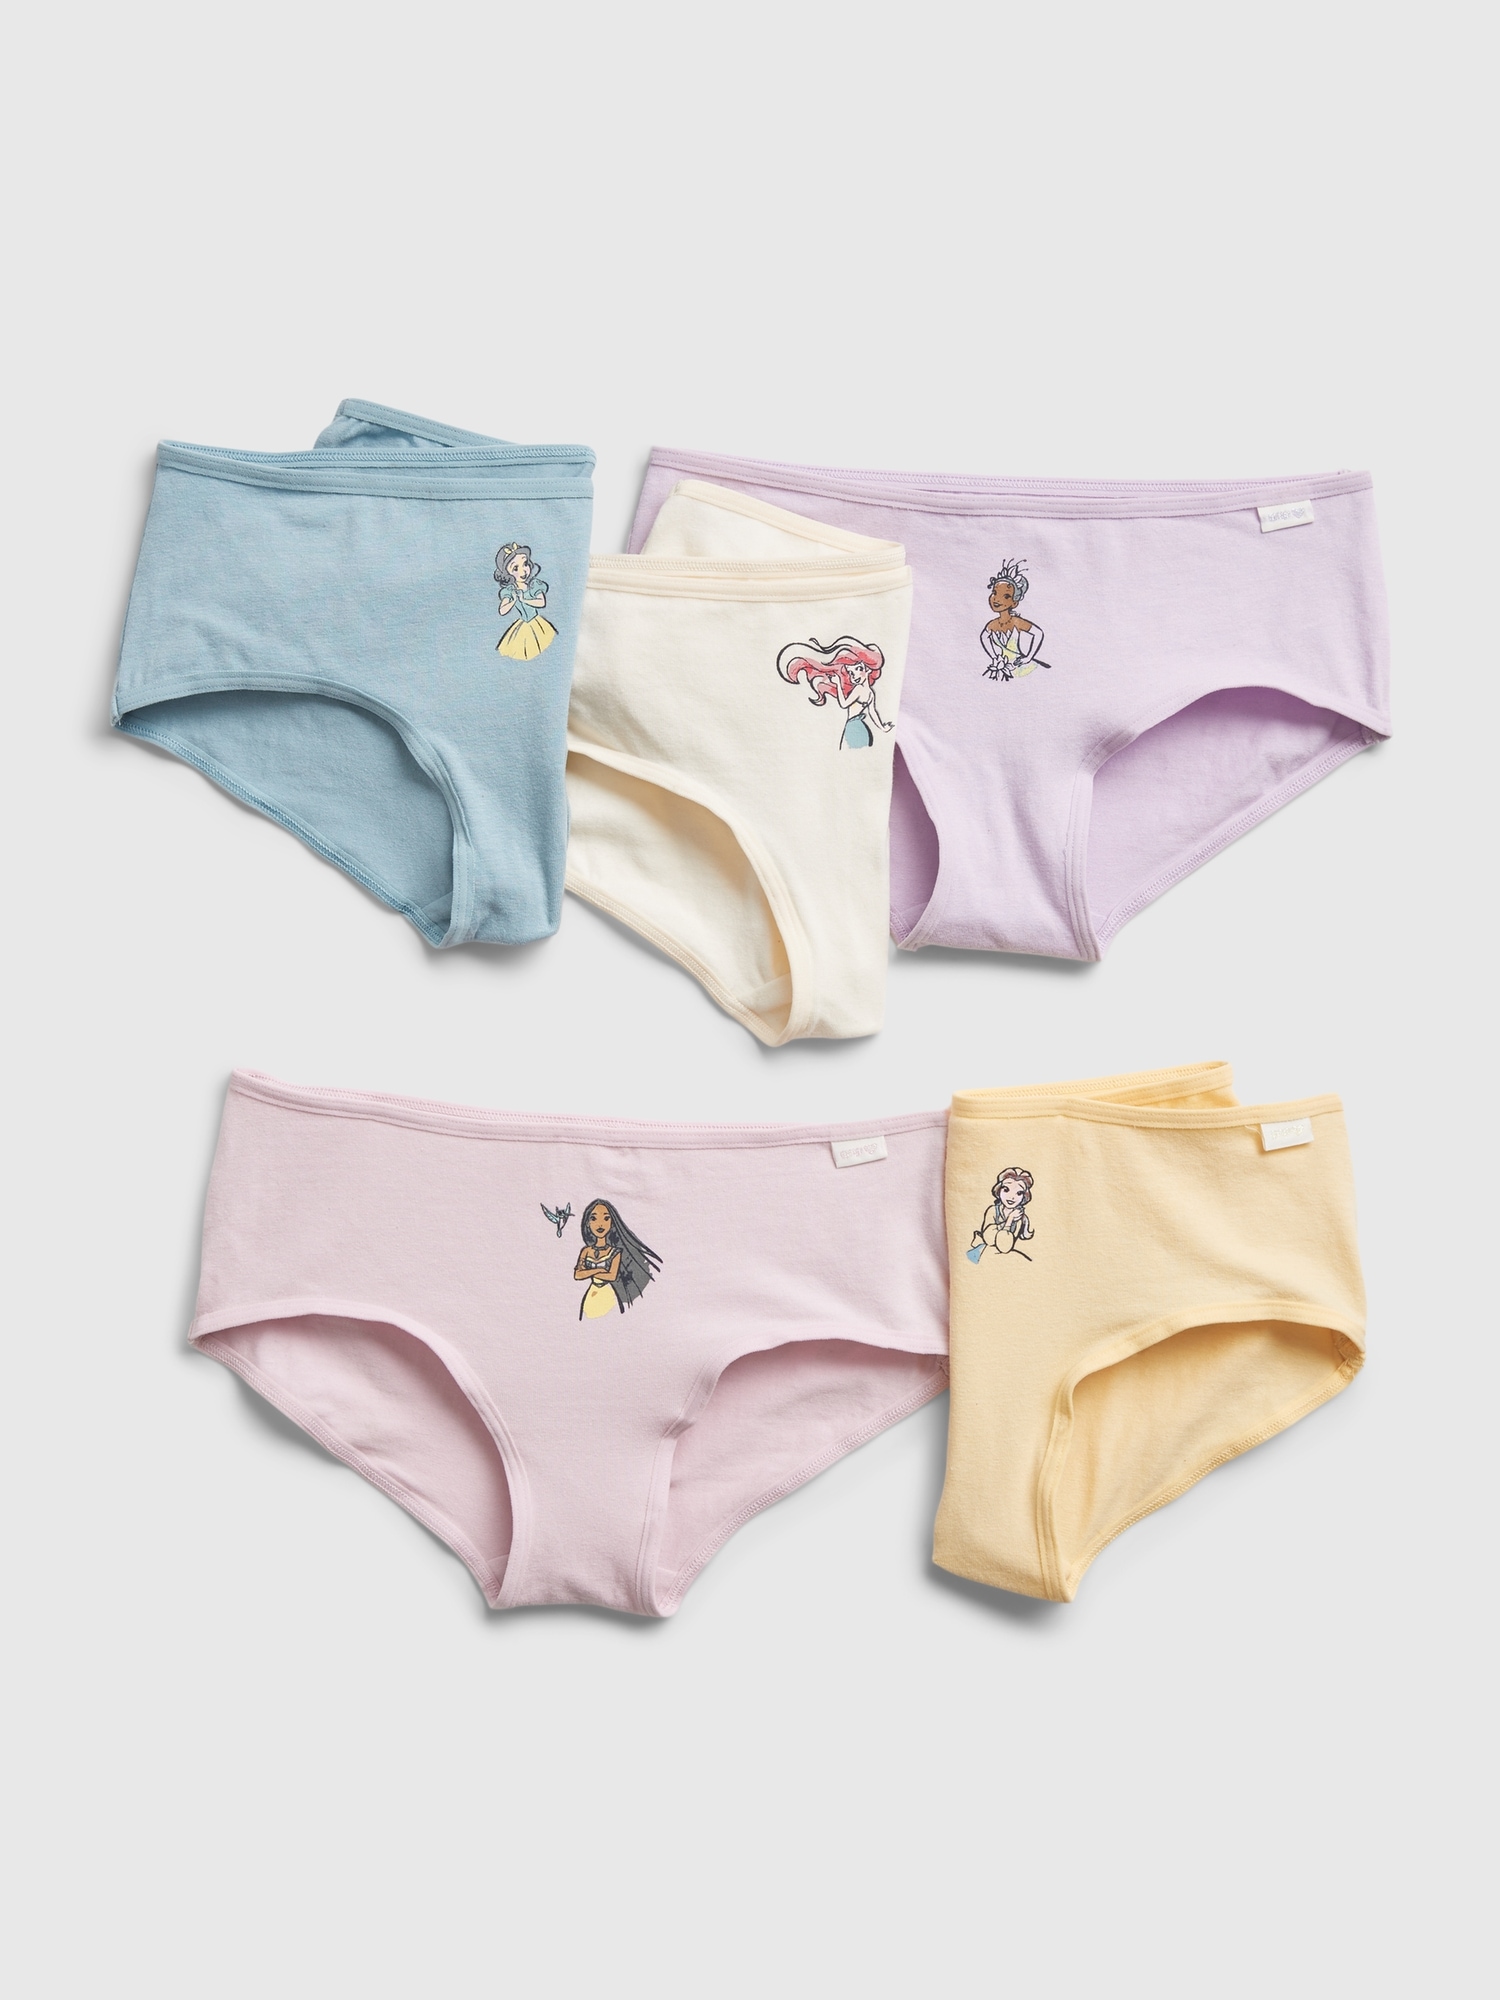 4pcs Girls Cotton Briefs Children Underwear Princess Girl Printing